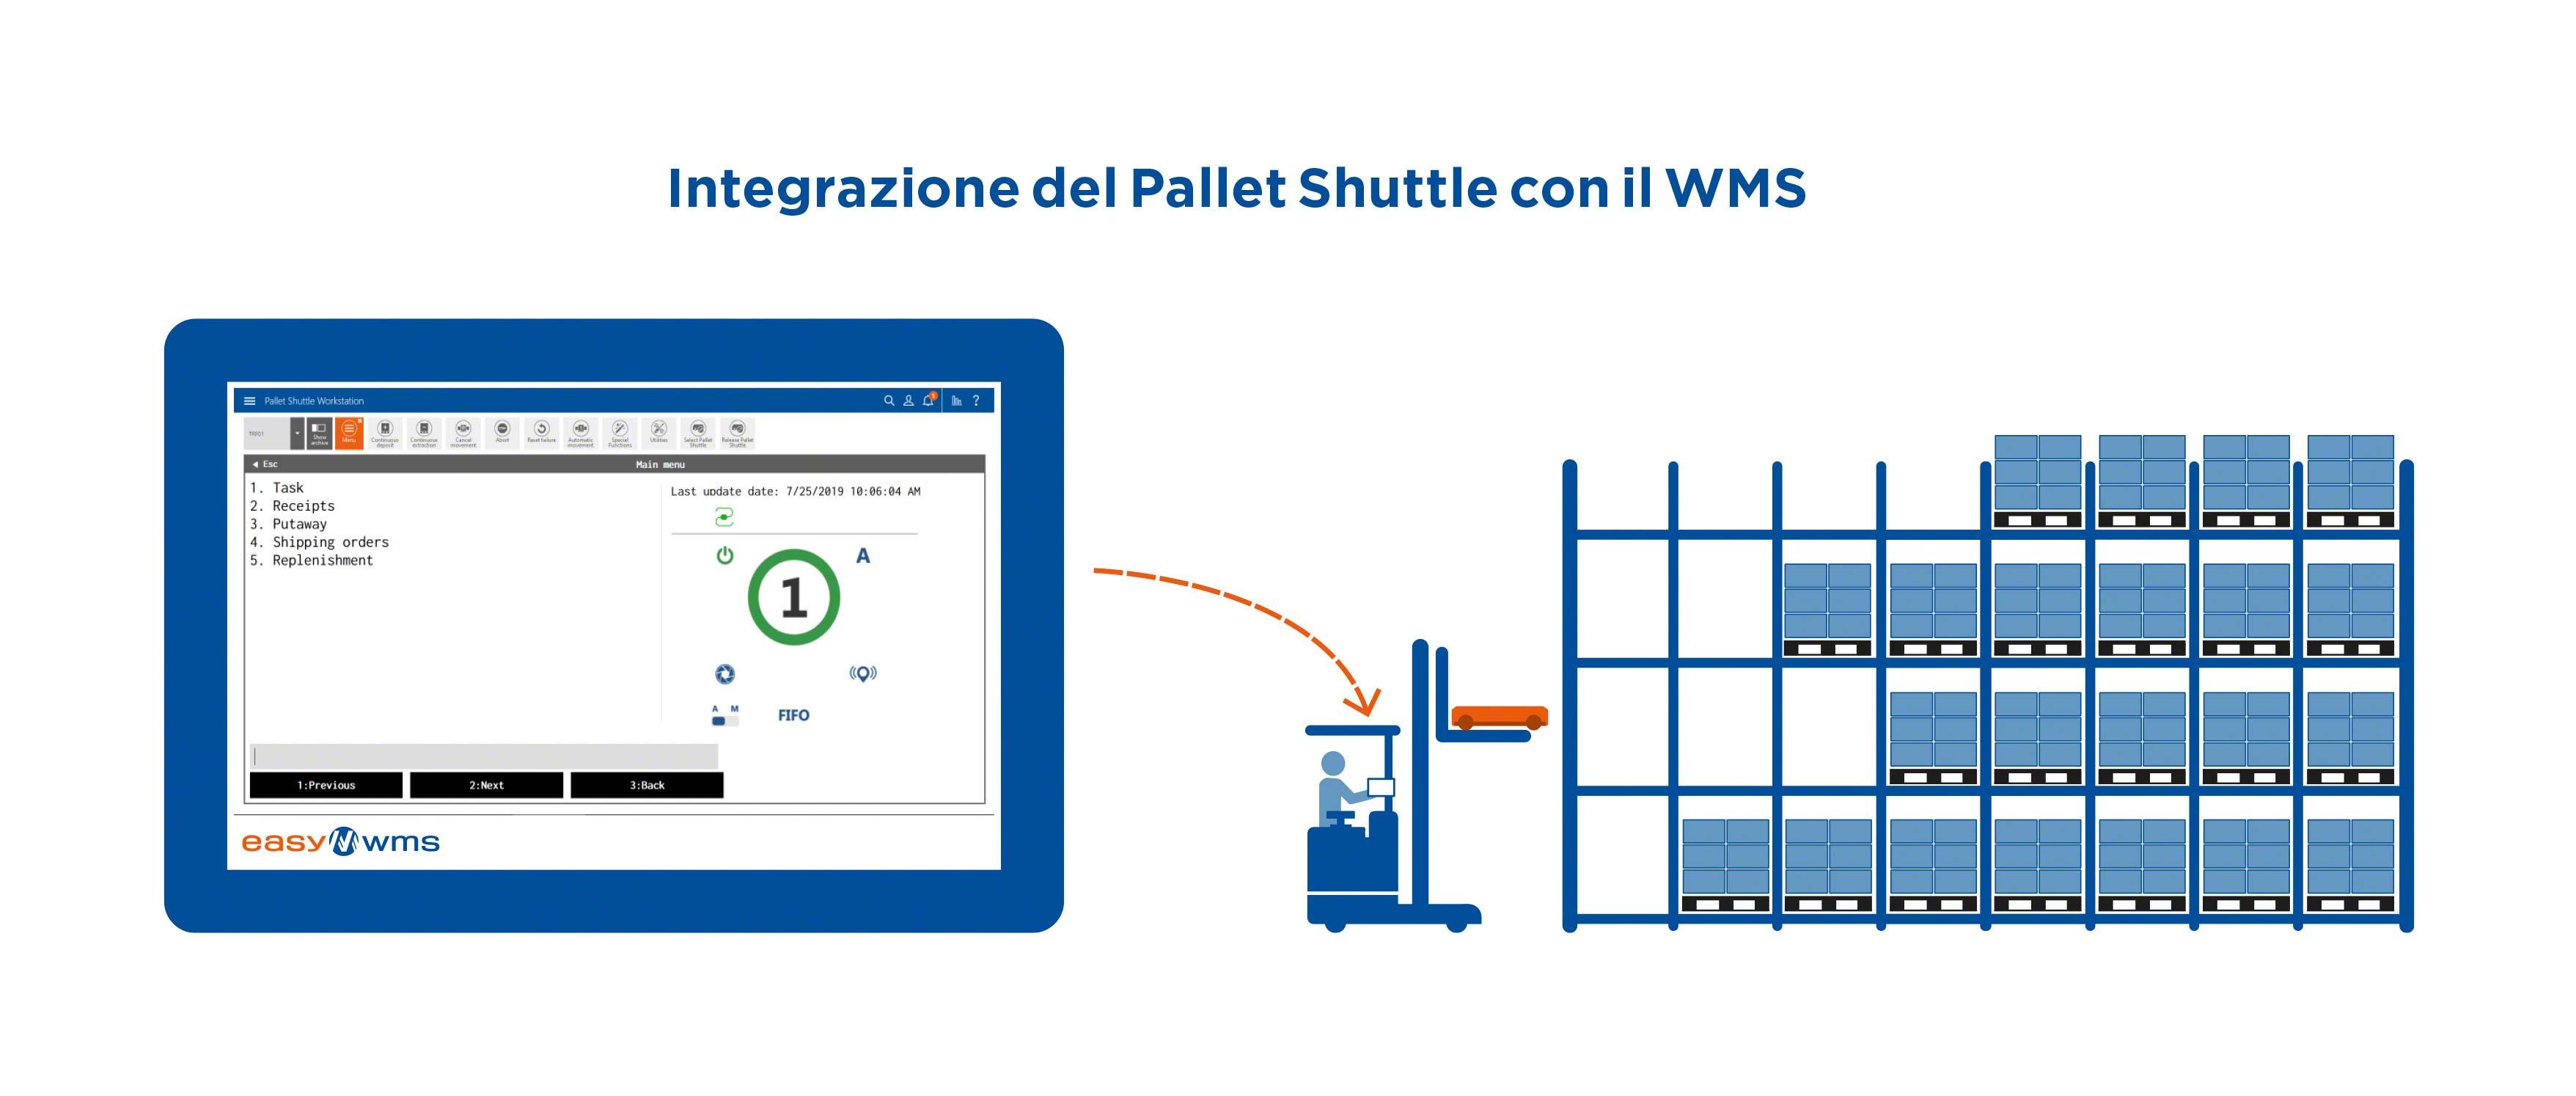 Integrazione del Pallet Shuttle con il WMS